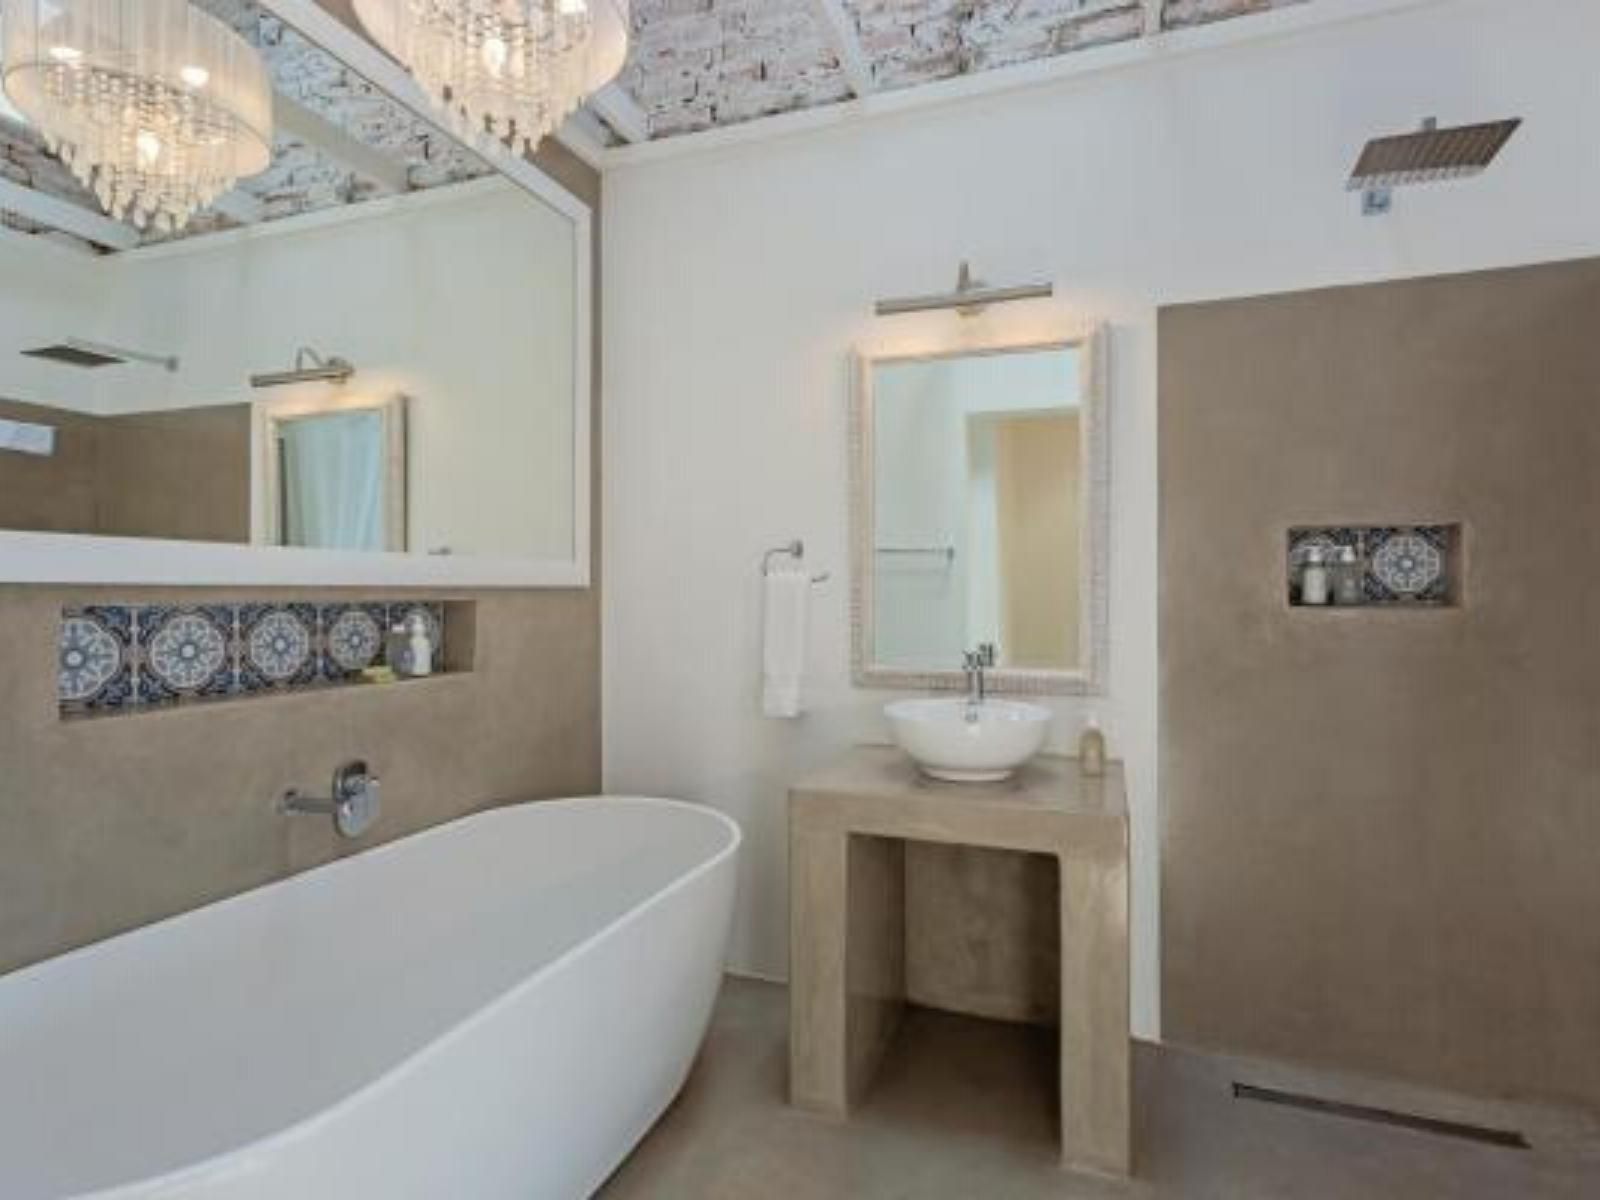 Seeplaas Guesthouse Bergsig Groot Brakrivier Great Brak River Western Cape South Africa Unsaturated, Bathroom